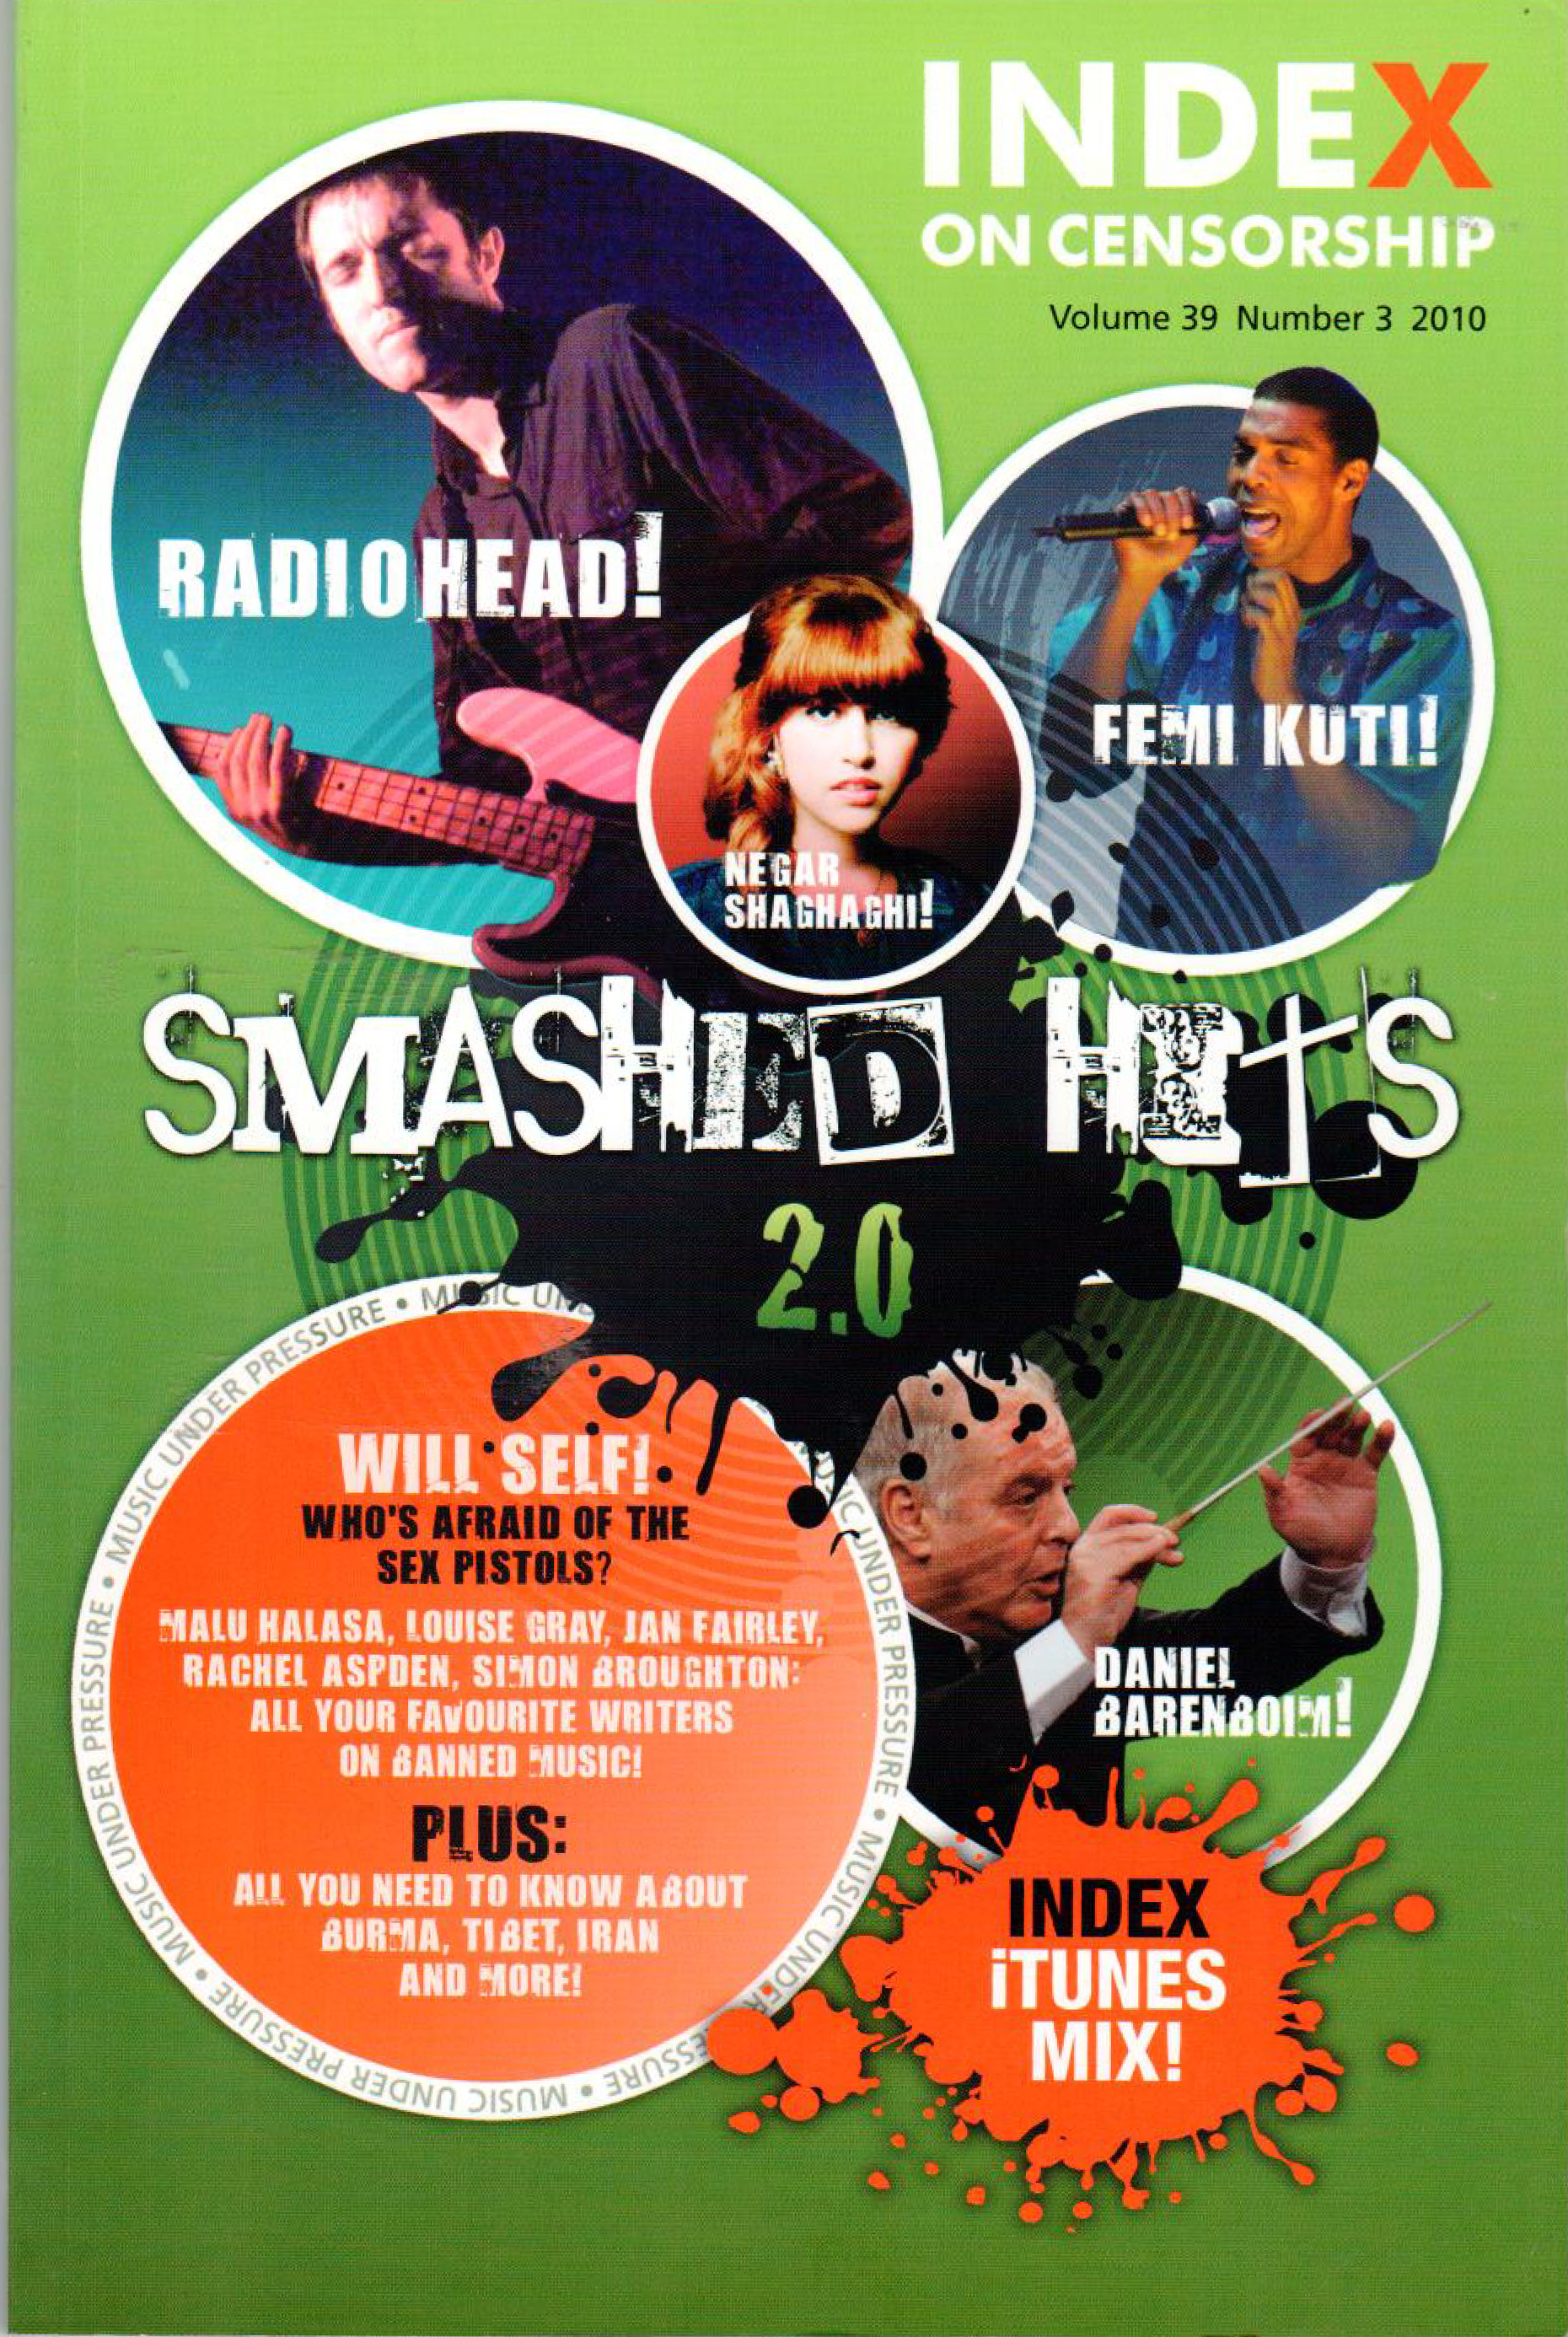 Smashed Hits 2.0, the autumn 2010 issue of Index on Censorship magazine.